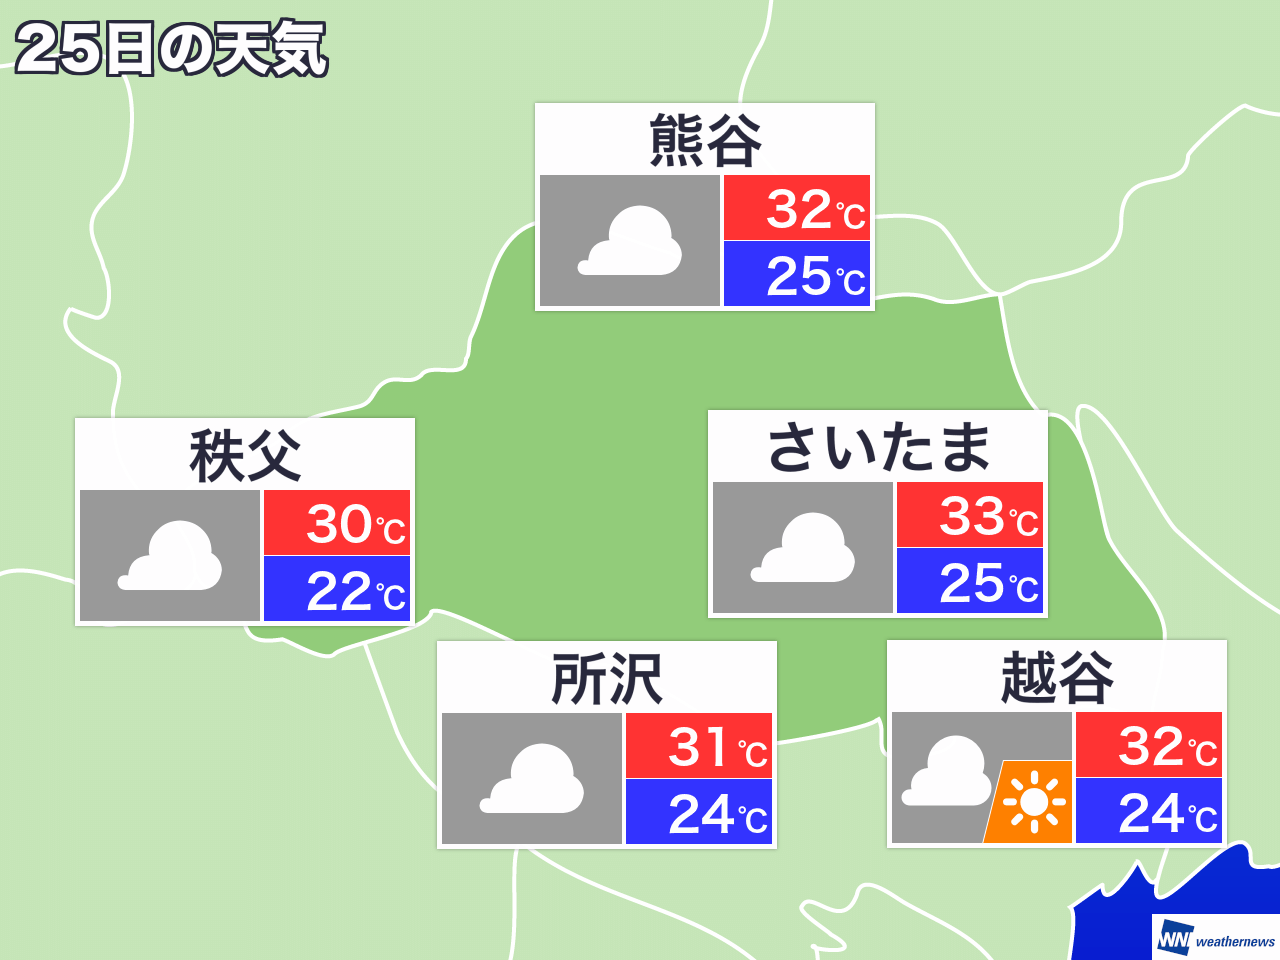 11月23日 土 埼玉県の今日の天気 ウェザーニュース